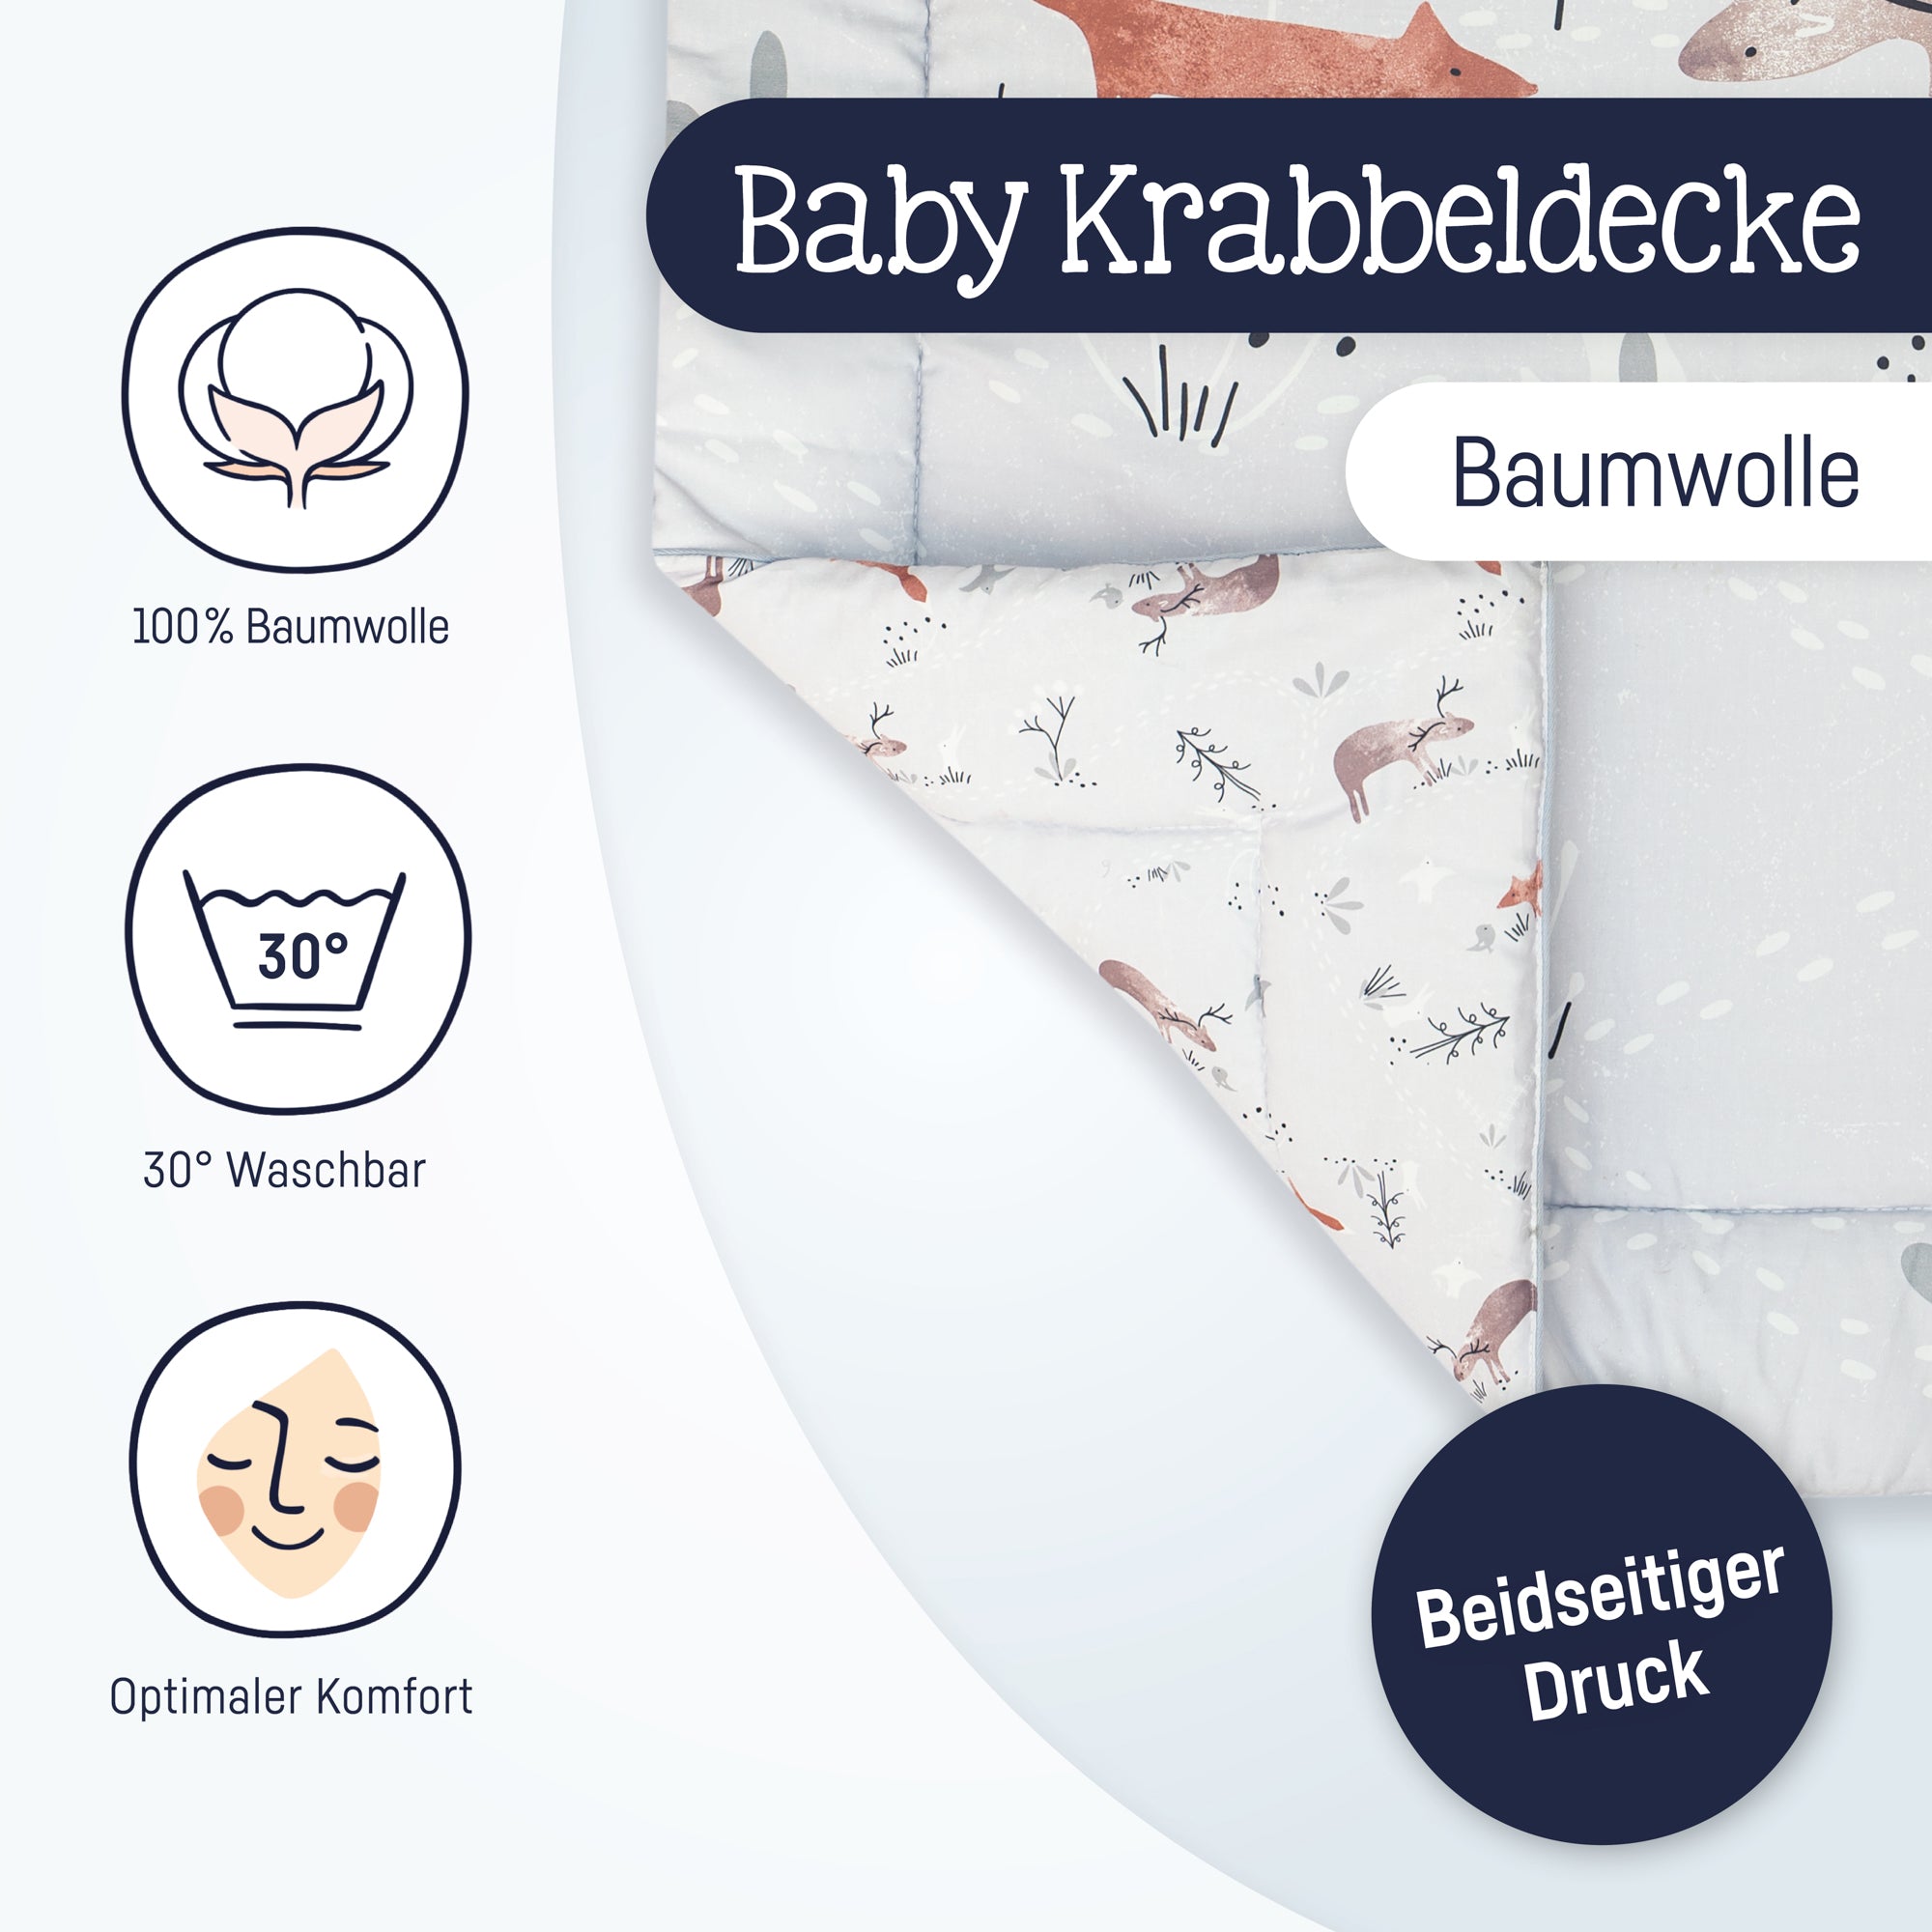 & Krabbeldecke, Julius Zöllner Woodlife – KG GmbH Co